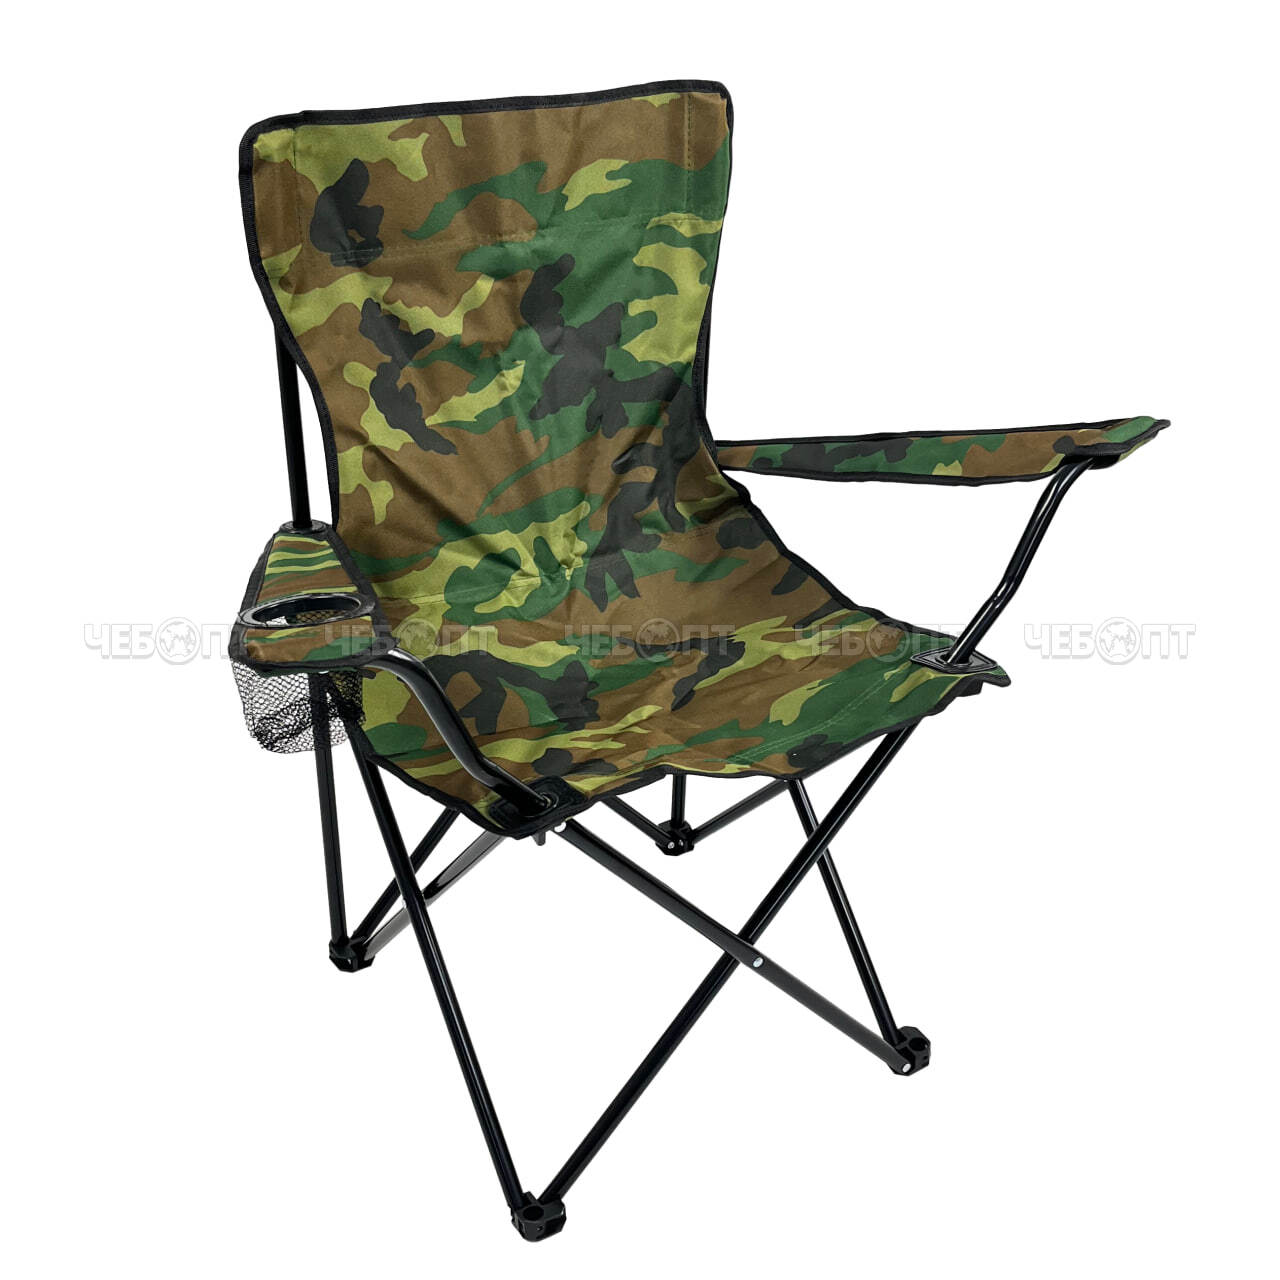 Кресло - складное походное 500*500*800 мм, ткань оксфорд 600D, нагрузка до 100 кг, цвета в ассортименте арт. 290026 $ [10] GOODSEE МПС. ЧЕБОПТ.